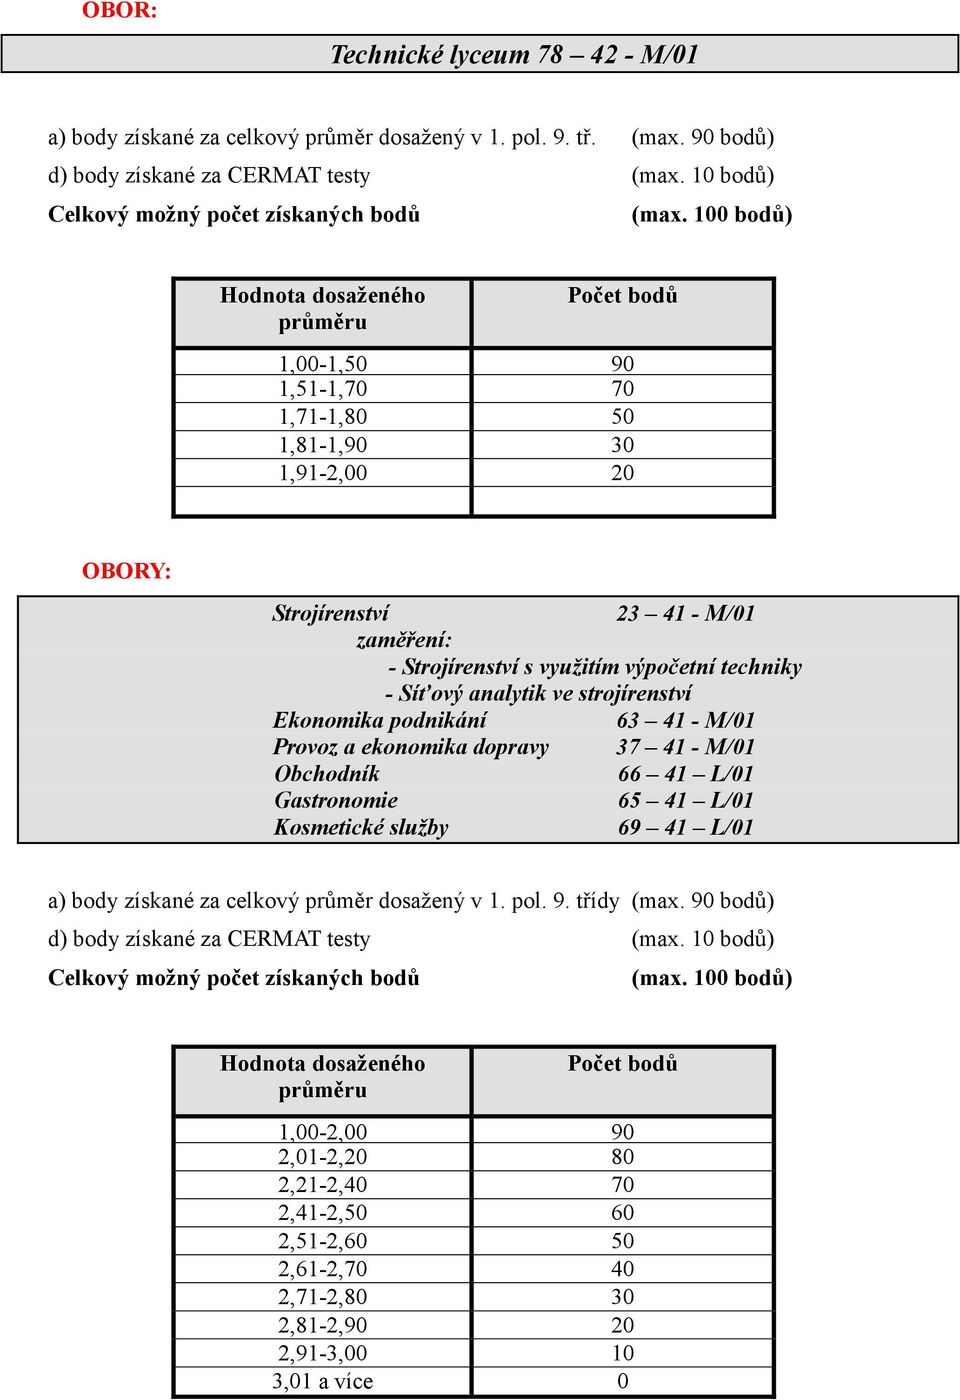 techniky - Síťový analytik ve strojírenství Obchodník 66 41 L/01 a) body získané za celkový průměr dosažený v 1. pol. 9. třídy (max. 90 bodů) d) body získané za CERMAT testy (max.